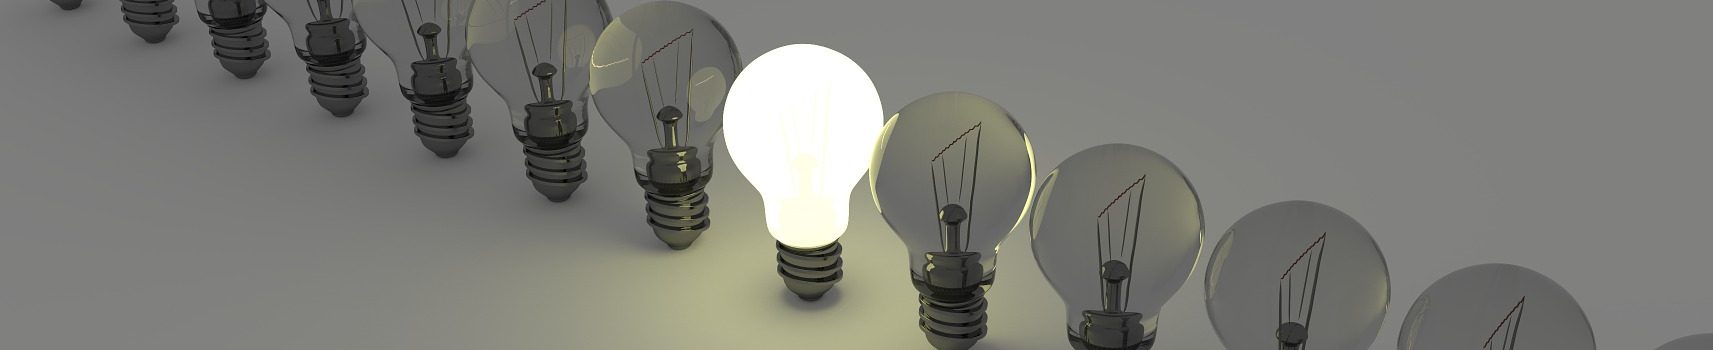 Glühlampen sind in den letzten Jahren deutlich energieffizienter geworden.